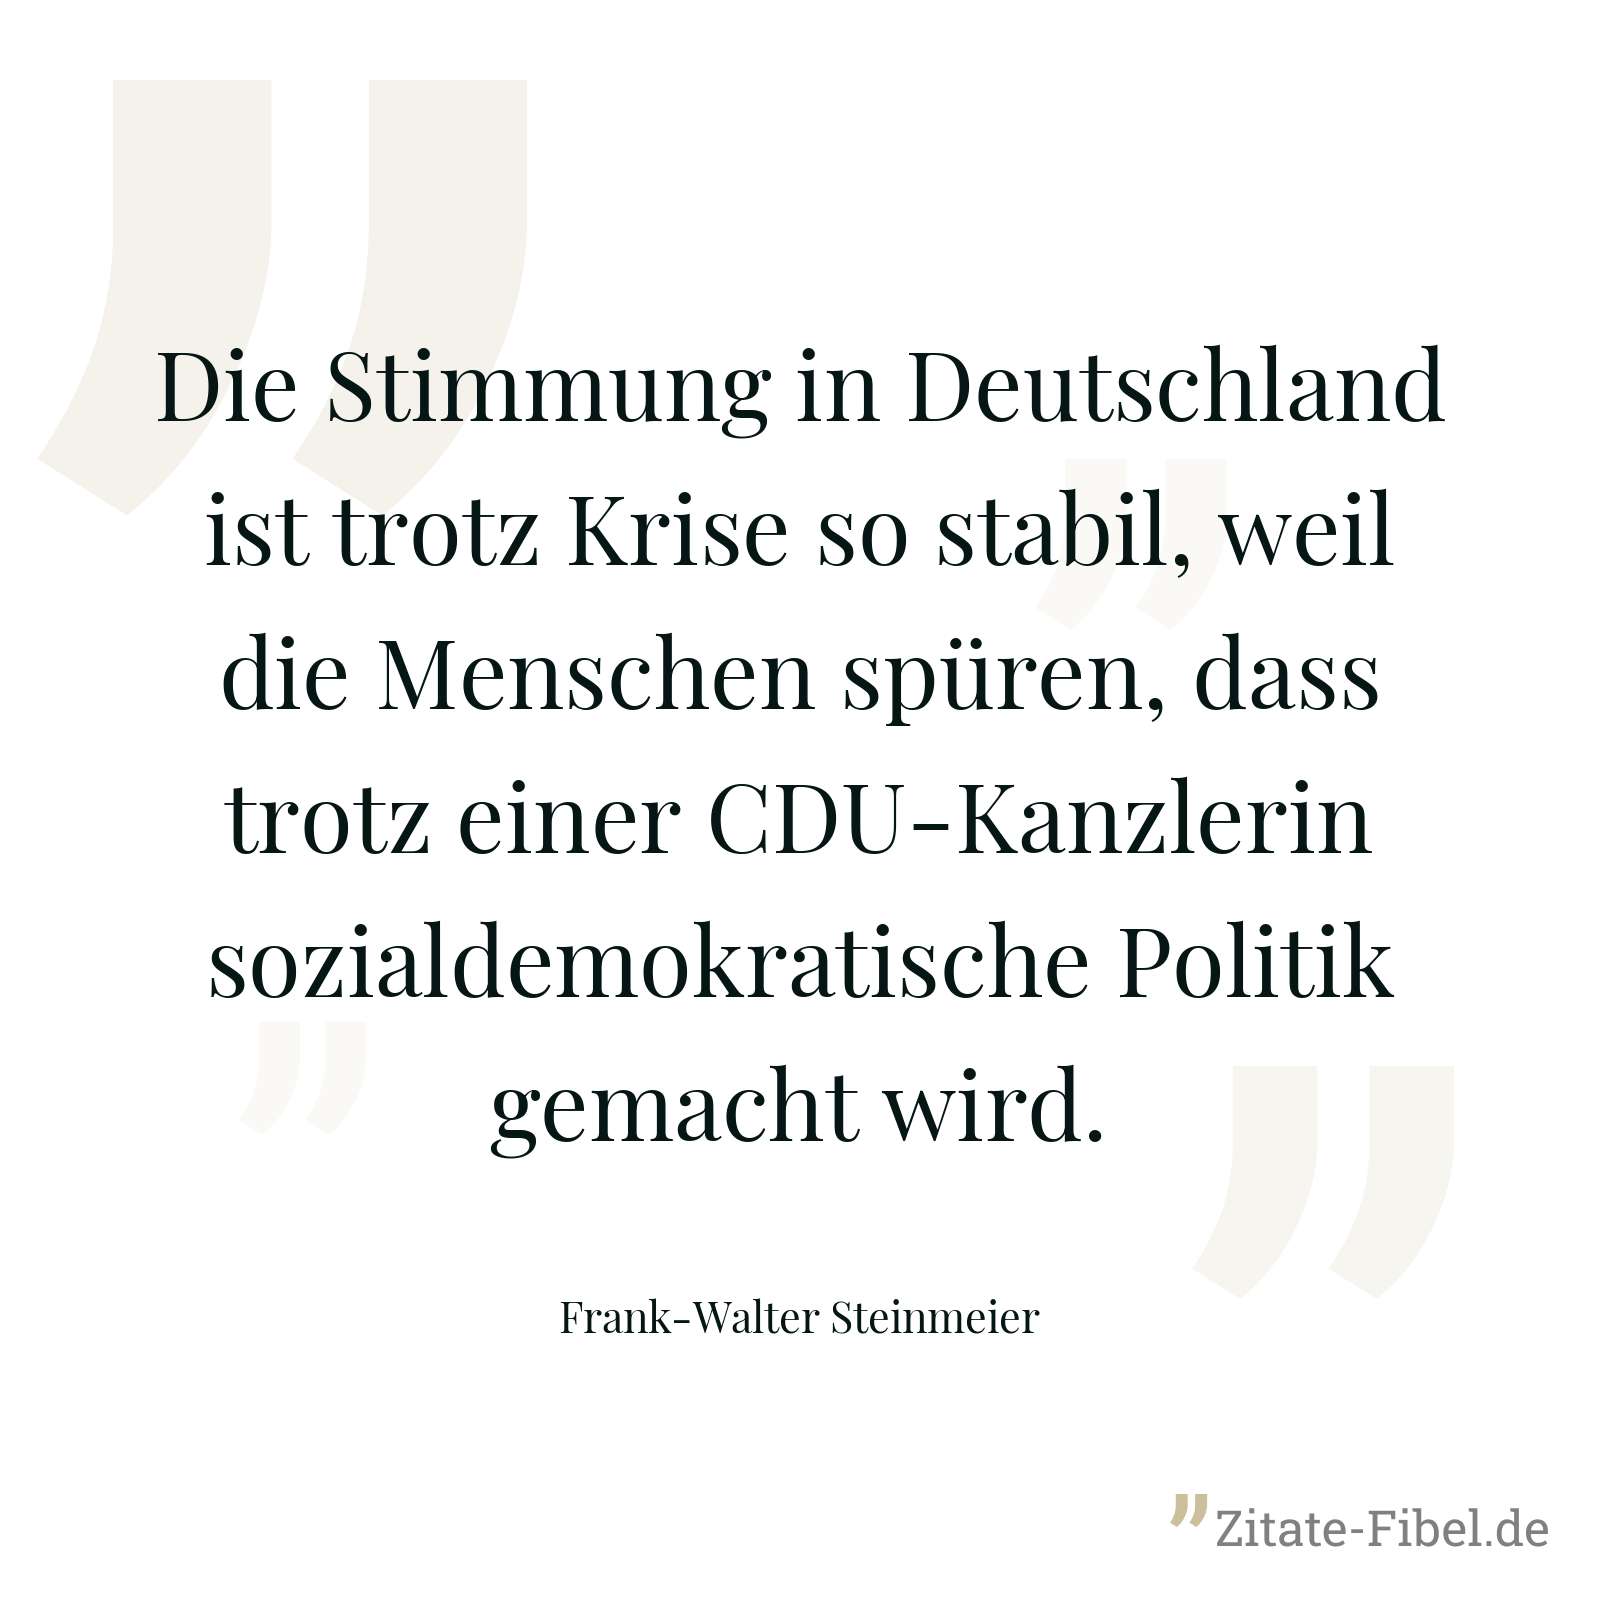 Die Stimmung in Deutschland ist trotz Krise so stabil, weil die Menschen spüren, dass trotz einer CDU-Kanzlerin sozialdemokratische Politik gemacht wird. - Frank-Walter Steinmeier